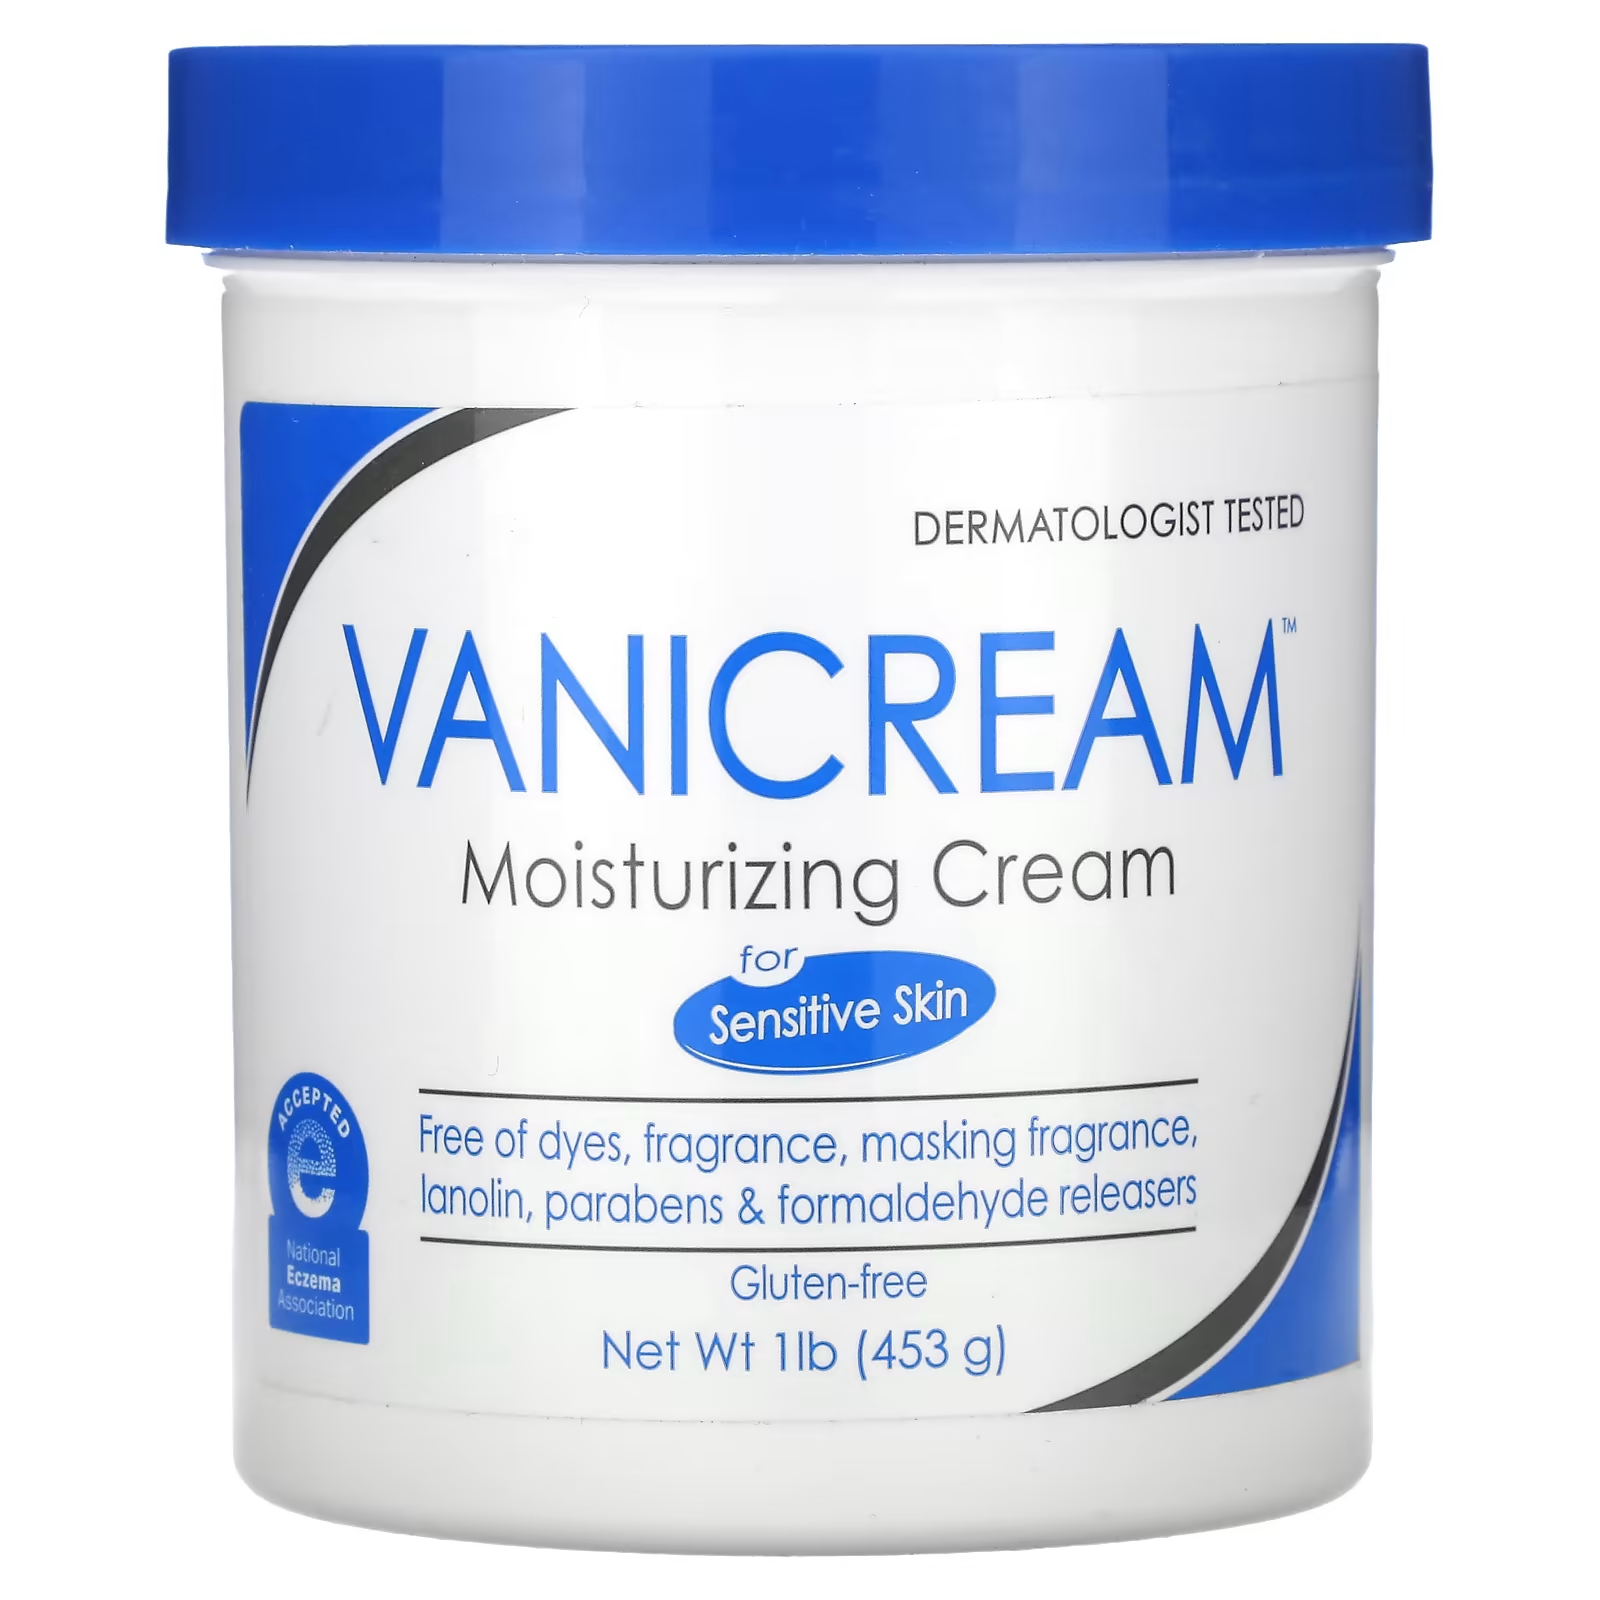 Увлажняющий крем Vanicream для сухой, раздраженной или чувствительной кожи, 1 фунт (453 г) vanicream увлажняющий крем для чувствительной кожи 1 фунт 453 г